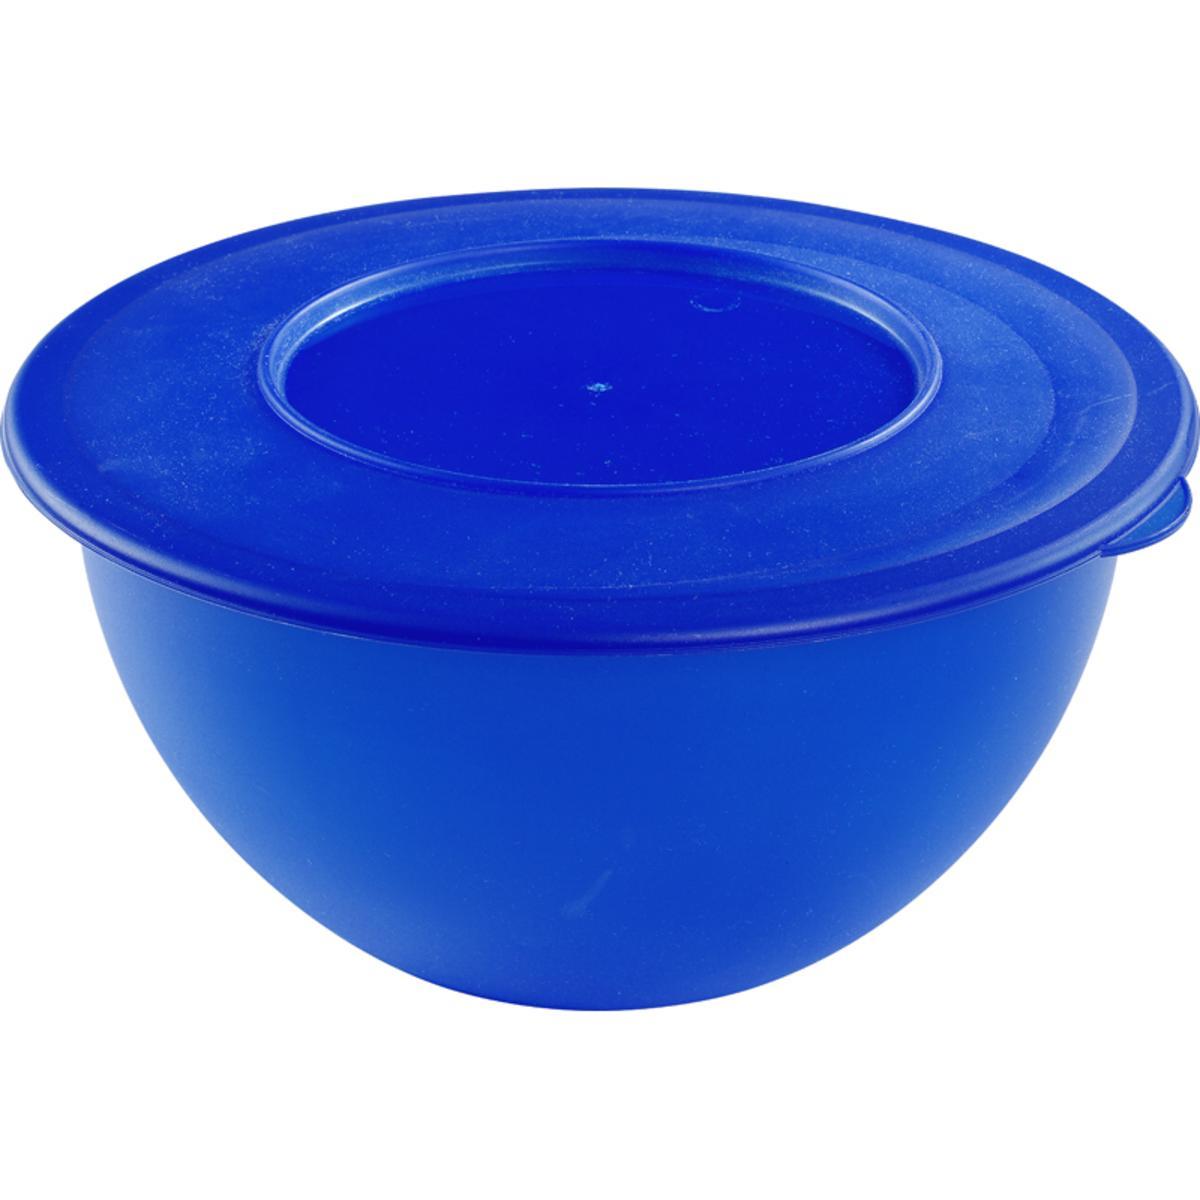 Saladier avec couvercle - 5 L - Différents coloris - Bleu, vert ou